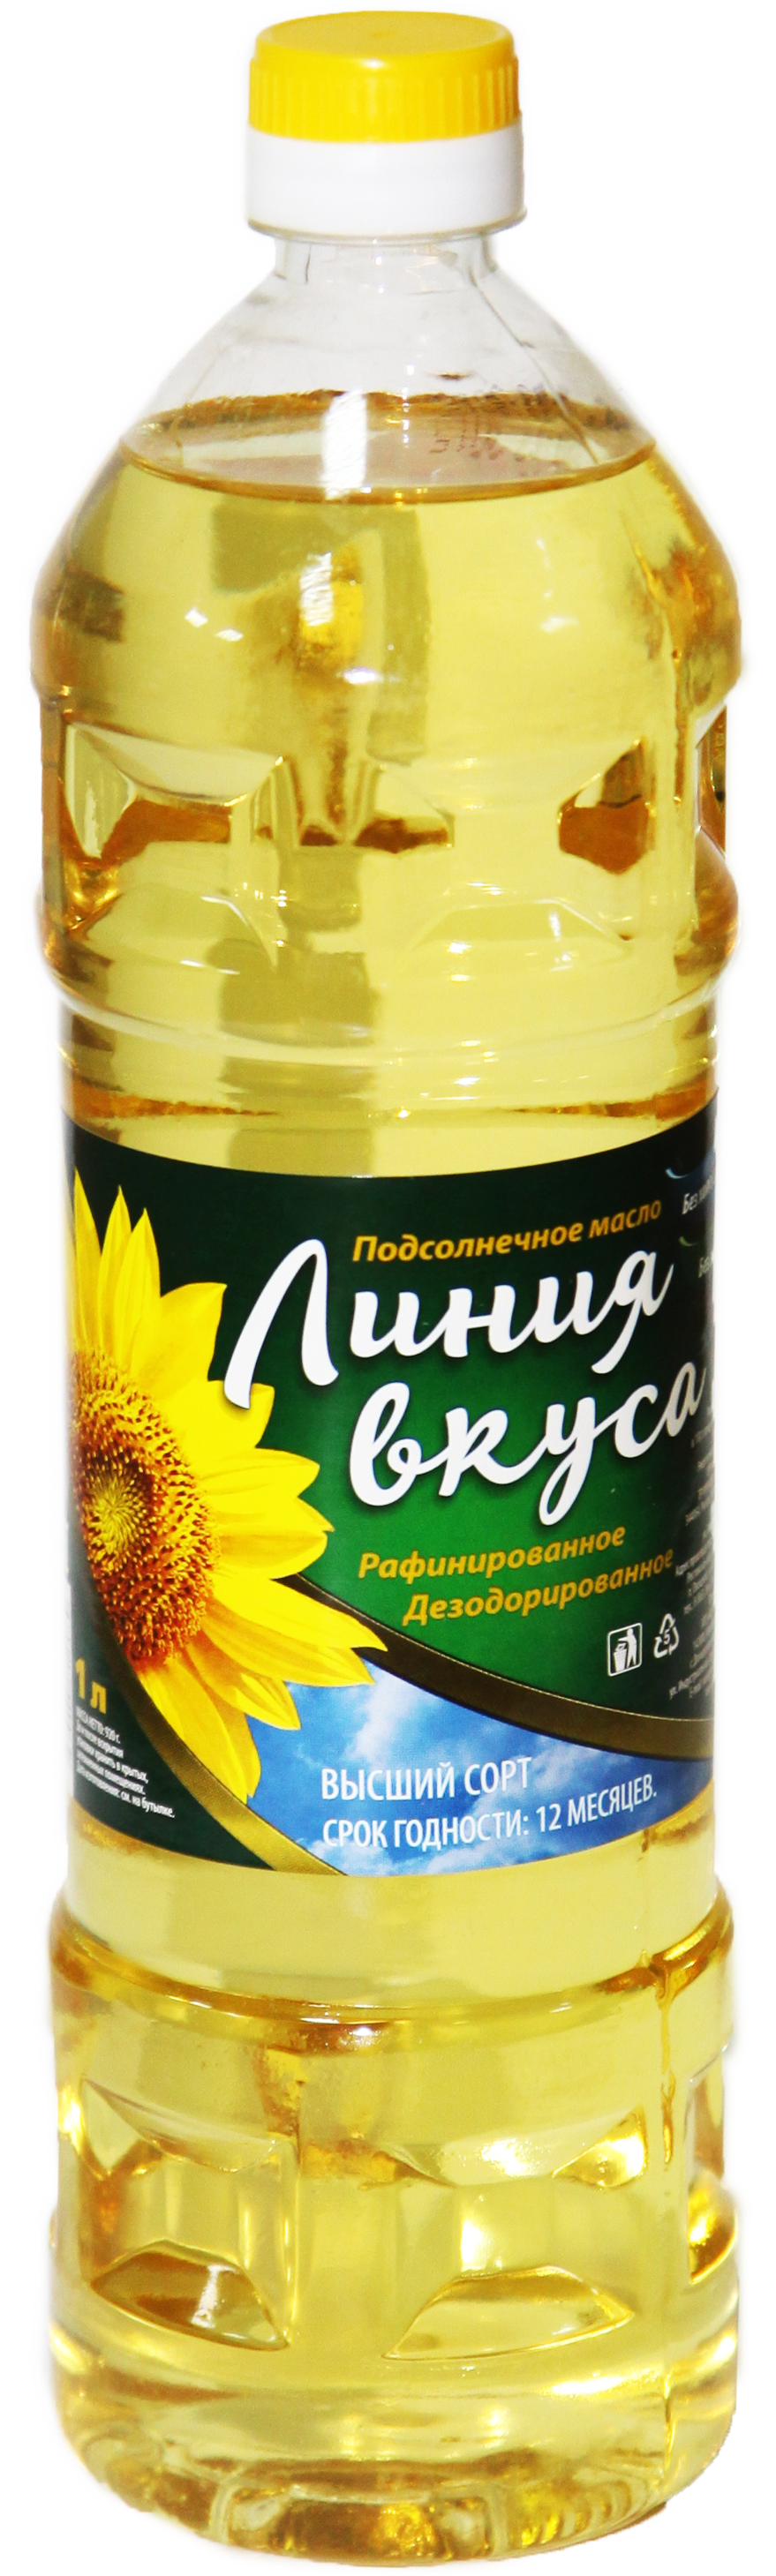 oil clipart sunflower oil